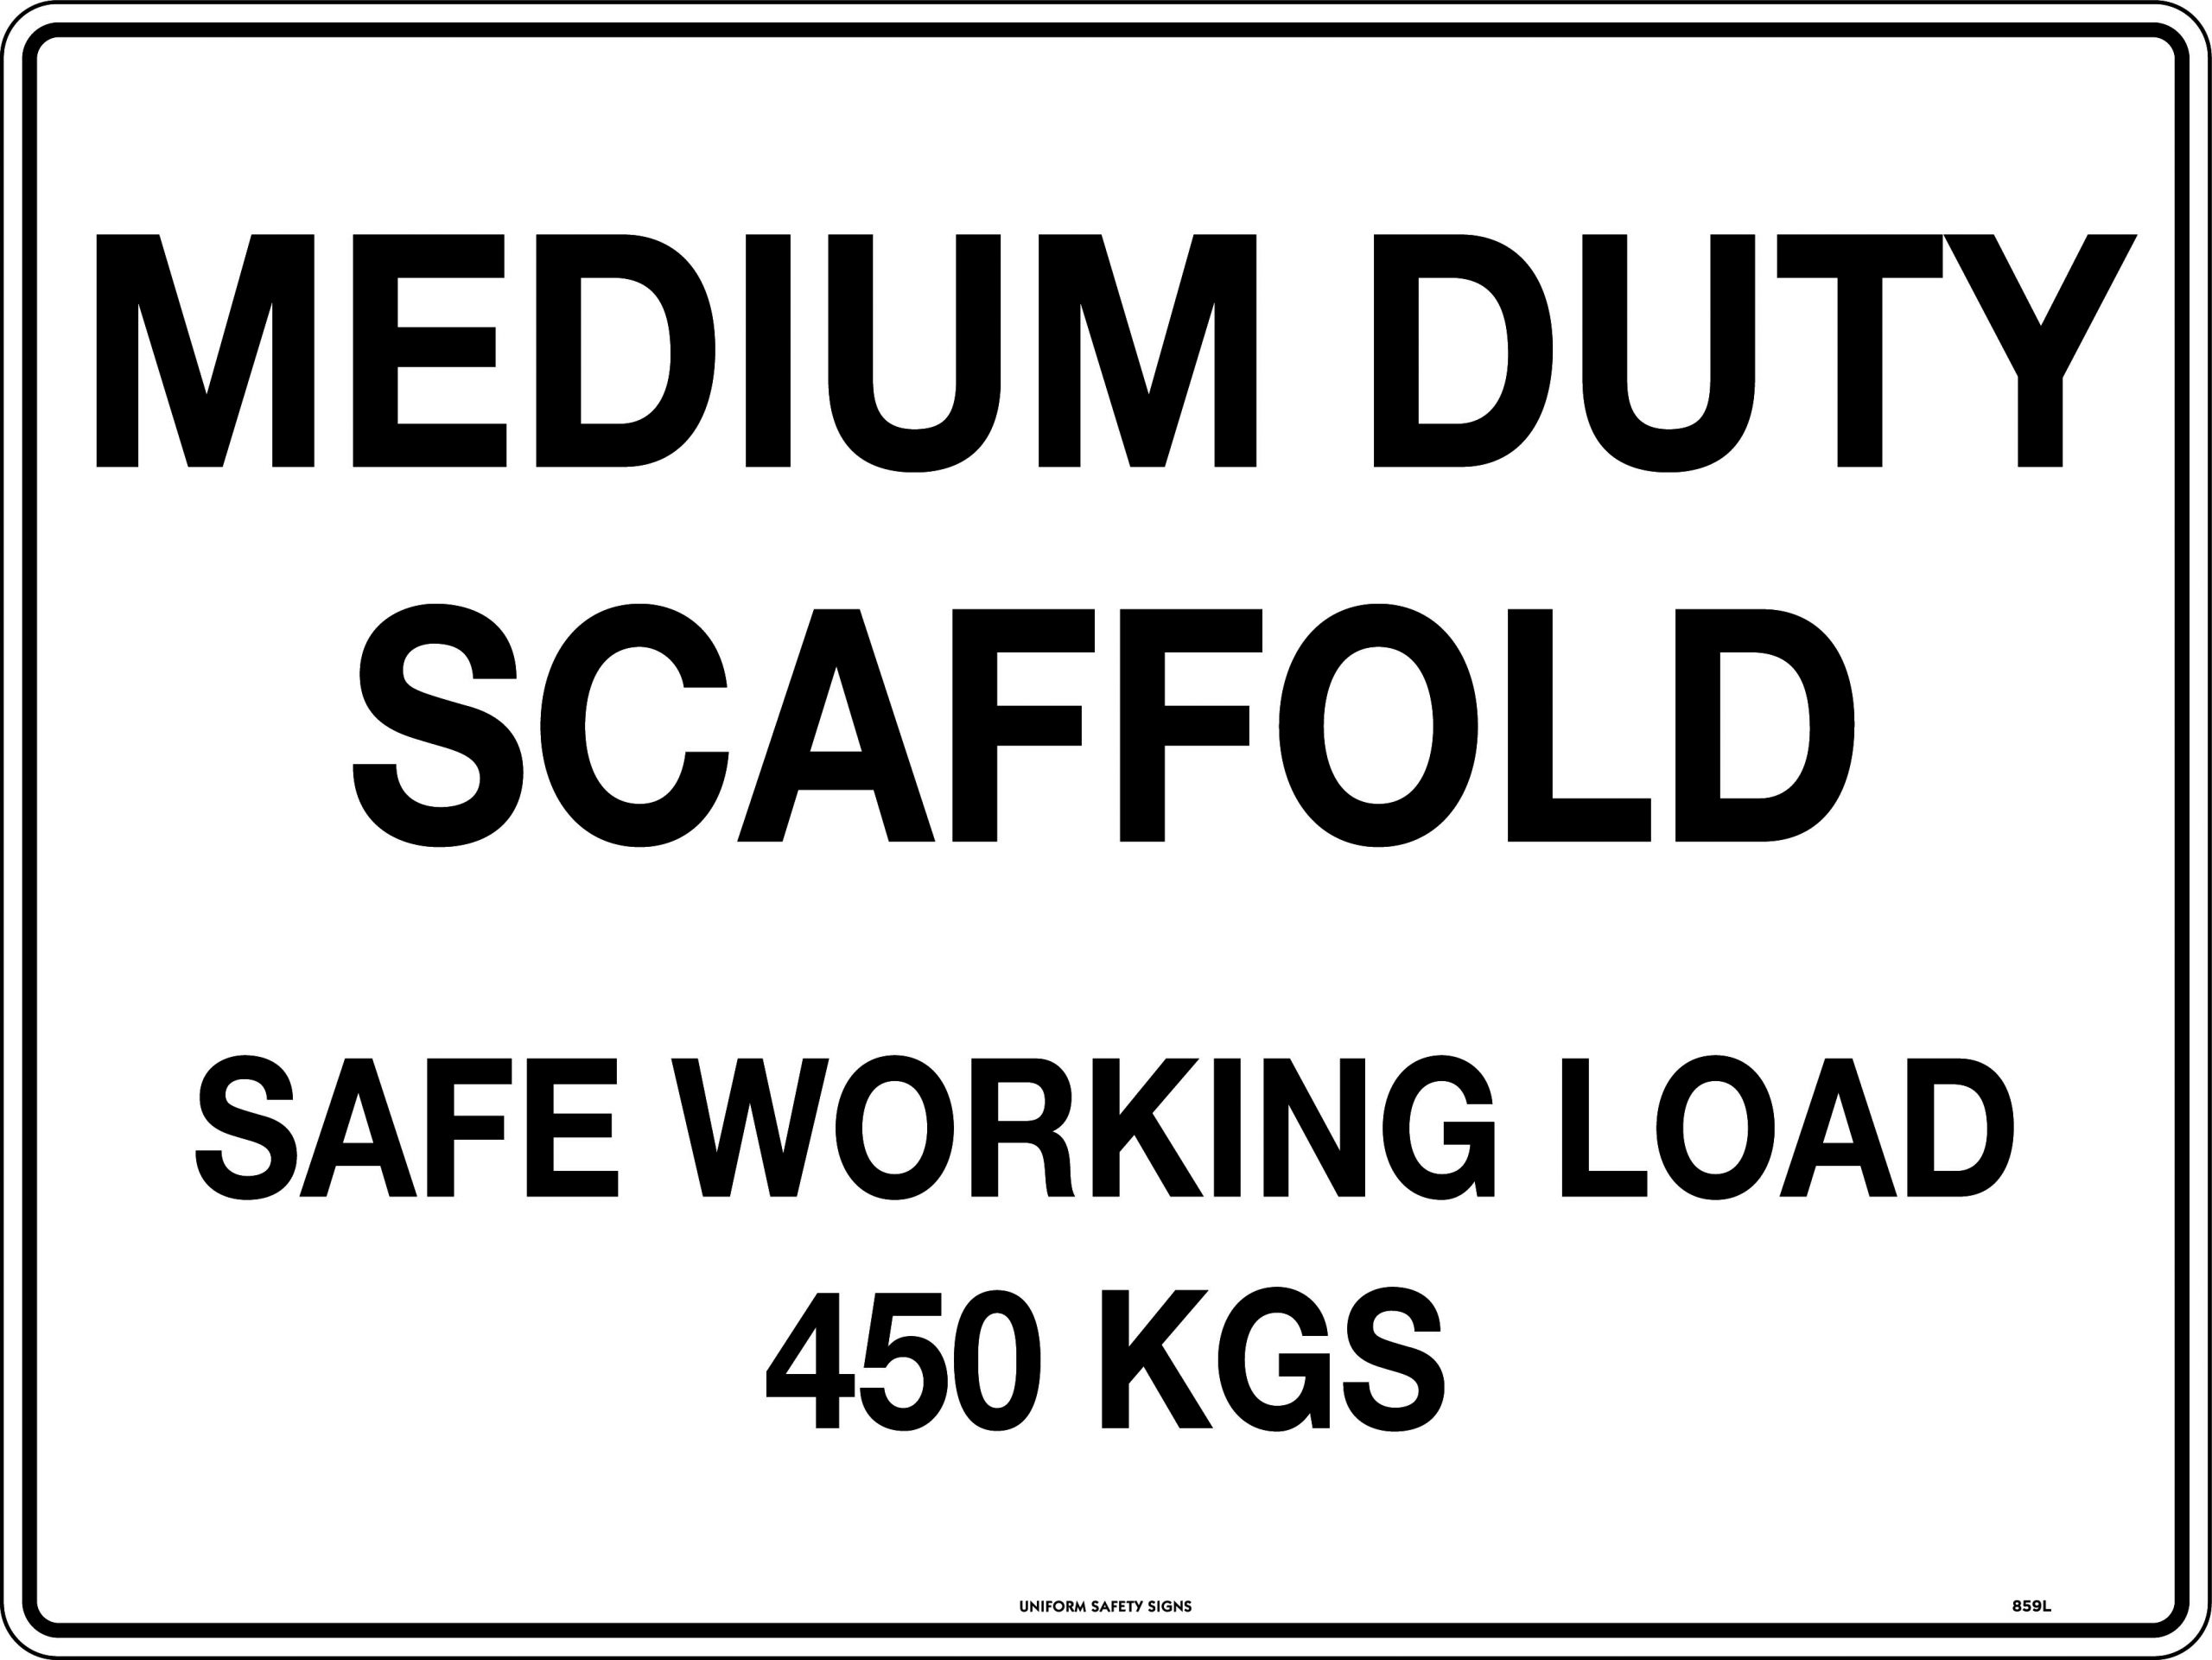 UNIFORM SAFETY 600X450MM CORFLUTE MEDIUM DUTY SCAFFOLD SAFE WORKING LO